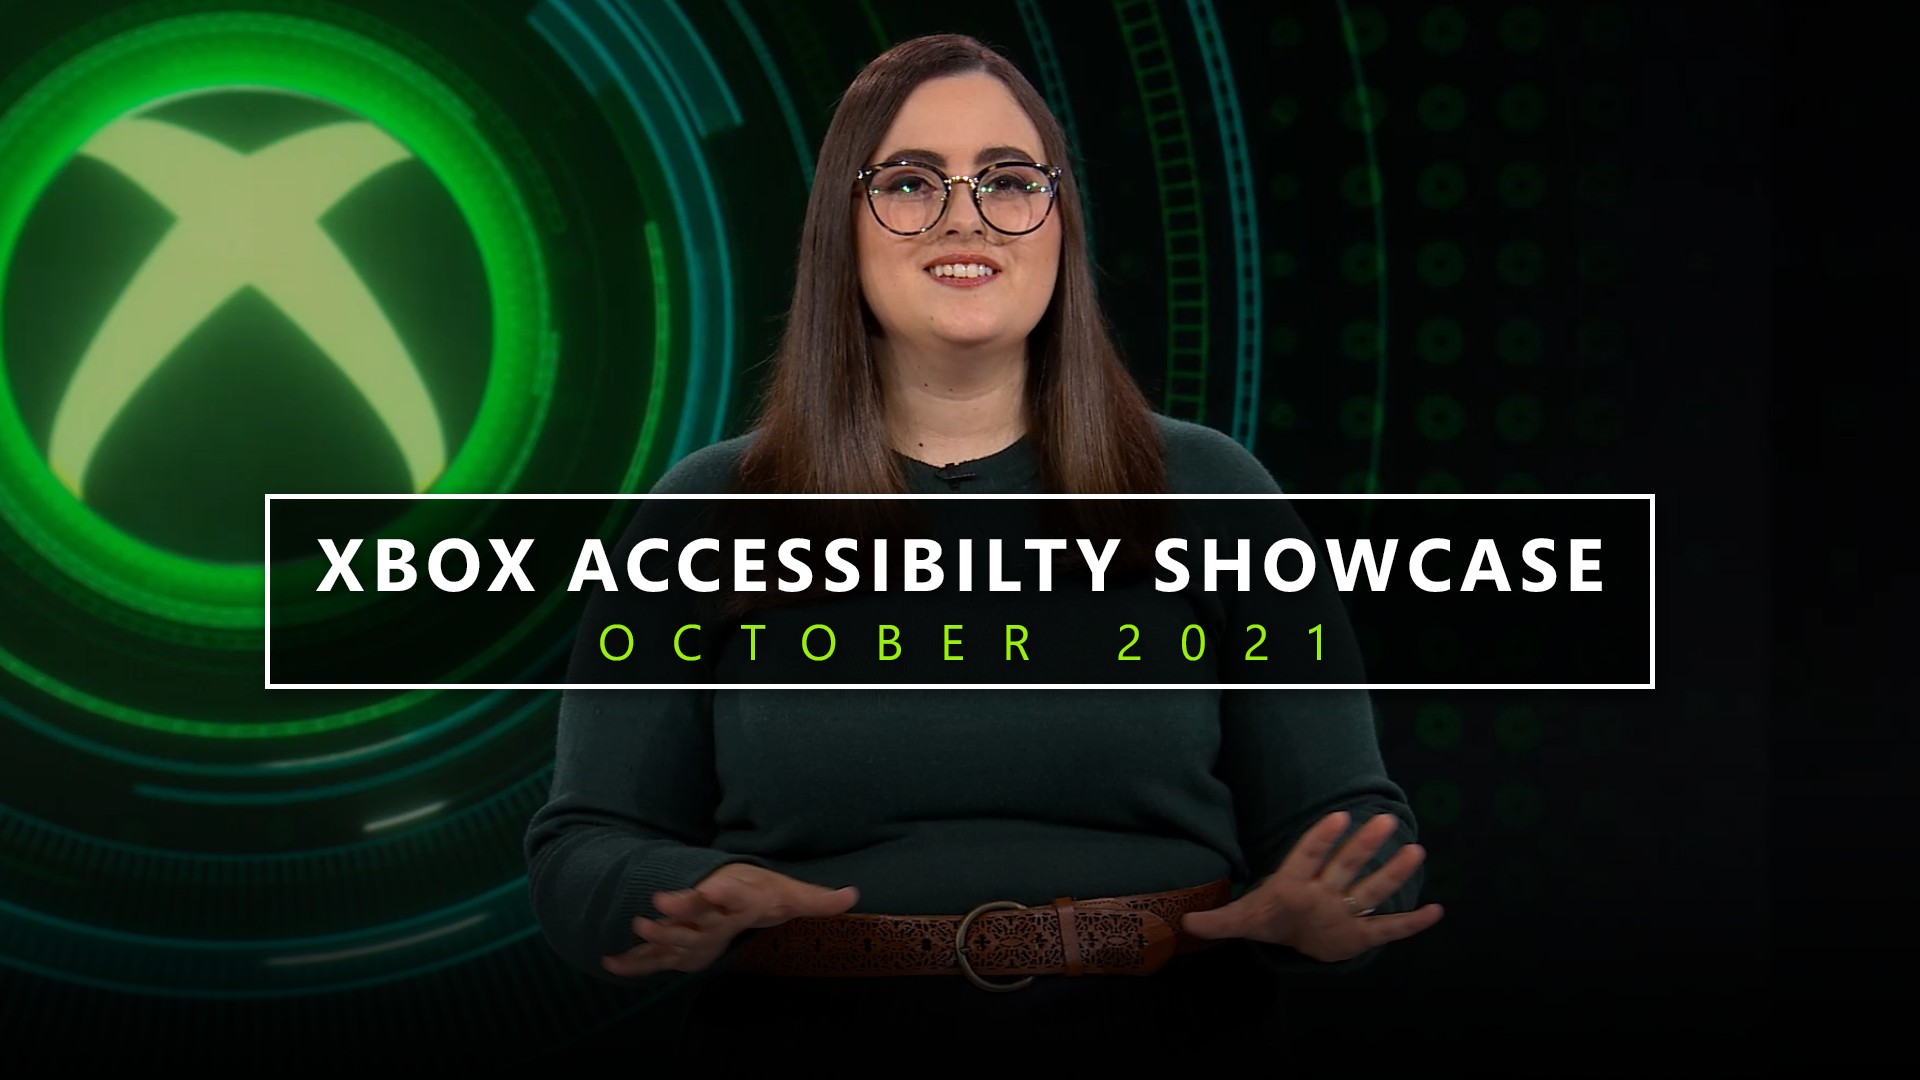 Accessibility Showcase Hero Image